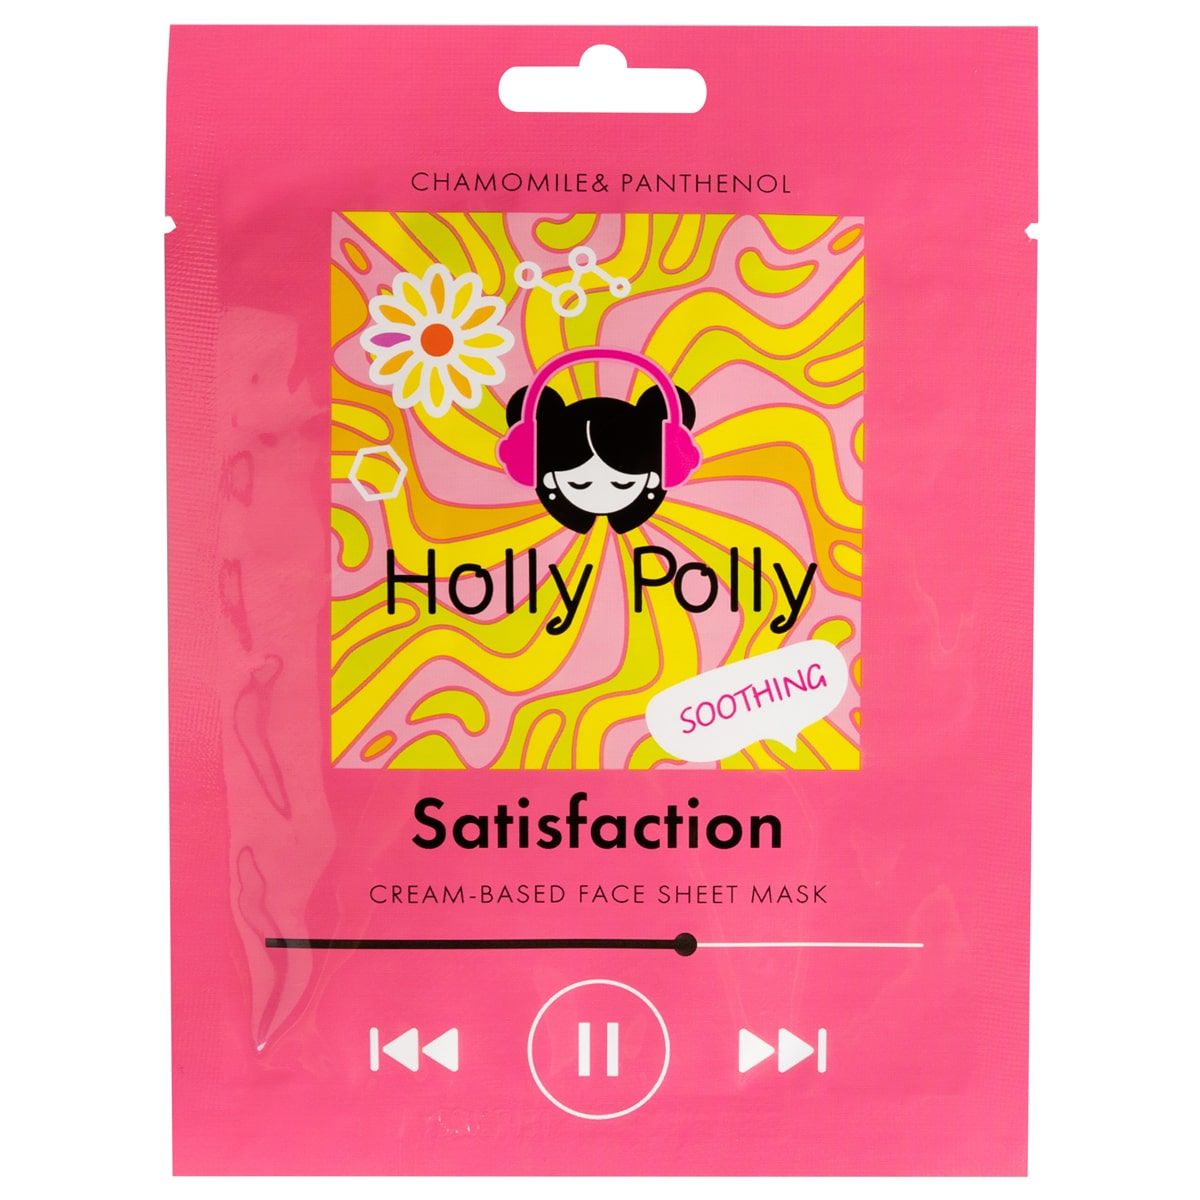 Holly Polly Music Collection Satisfaction - Тканевая маска для лица на кремовой основе с Ромашкой и Пантенолом (Успокаивающая) 22 гр Holly Polly (Россия) купить по цене 120 руб.